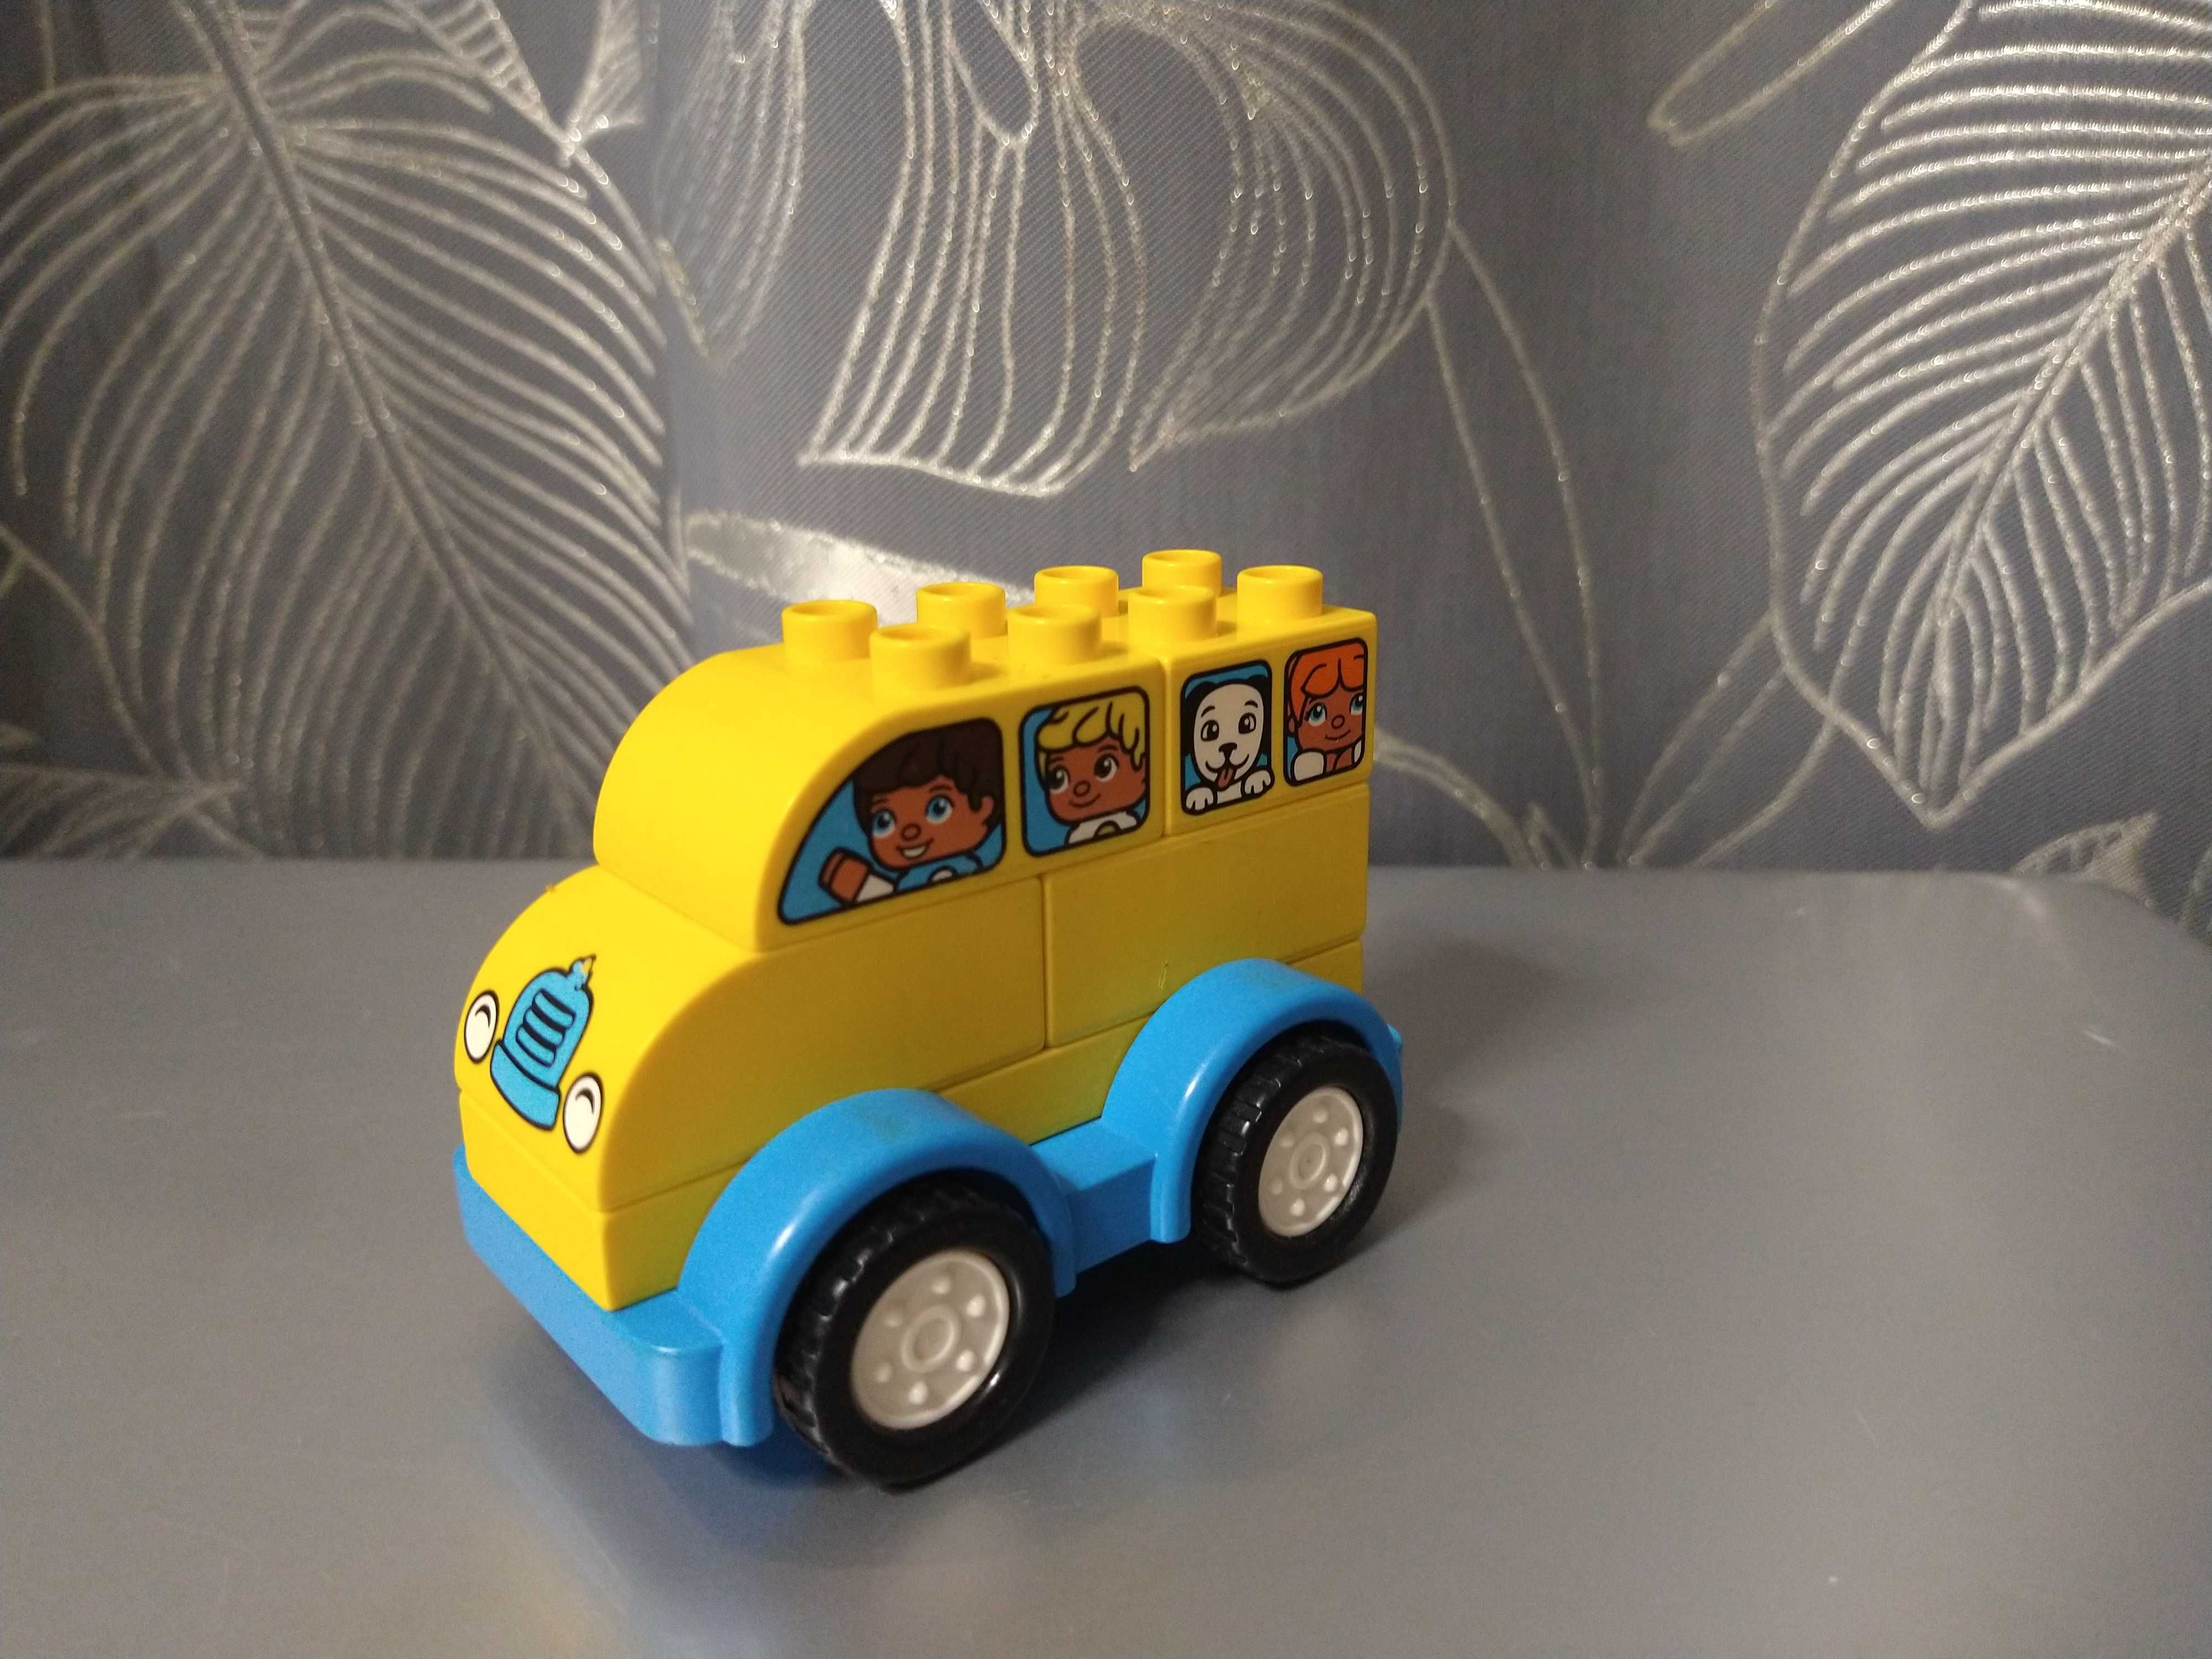 Klocki LEGO DUPLO Mój pierwszy autobus 10851